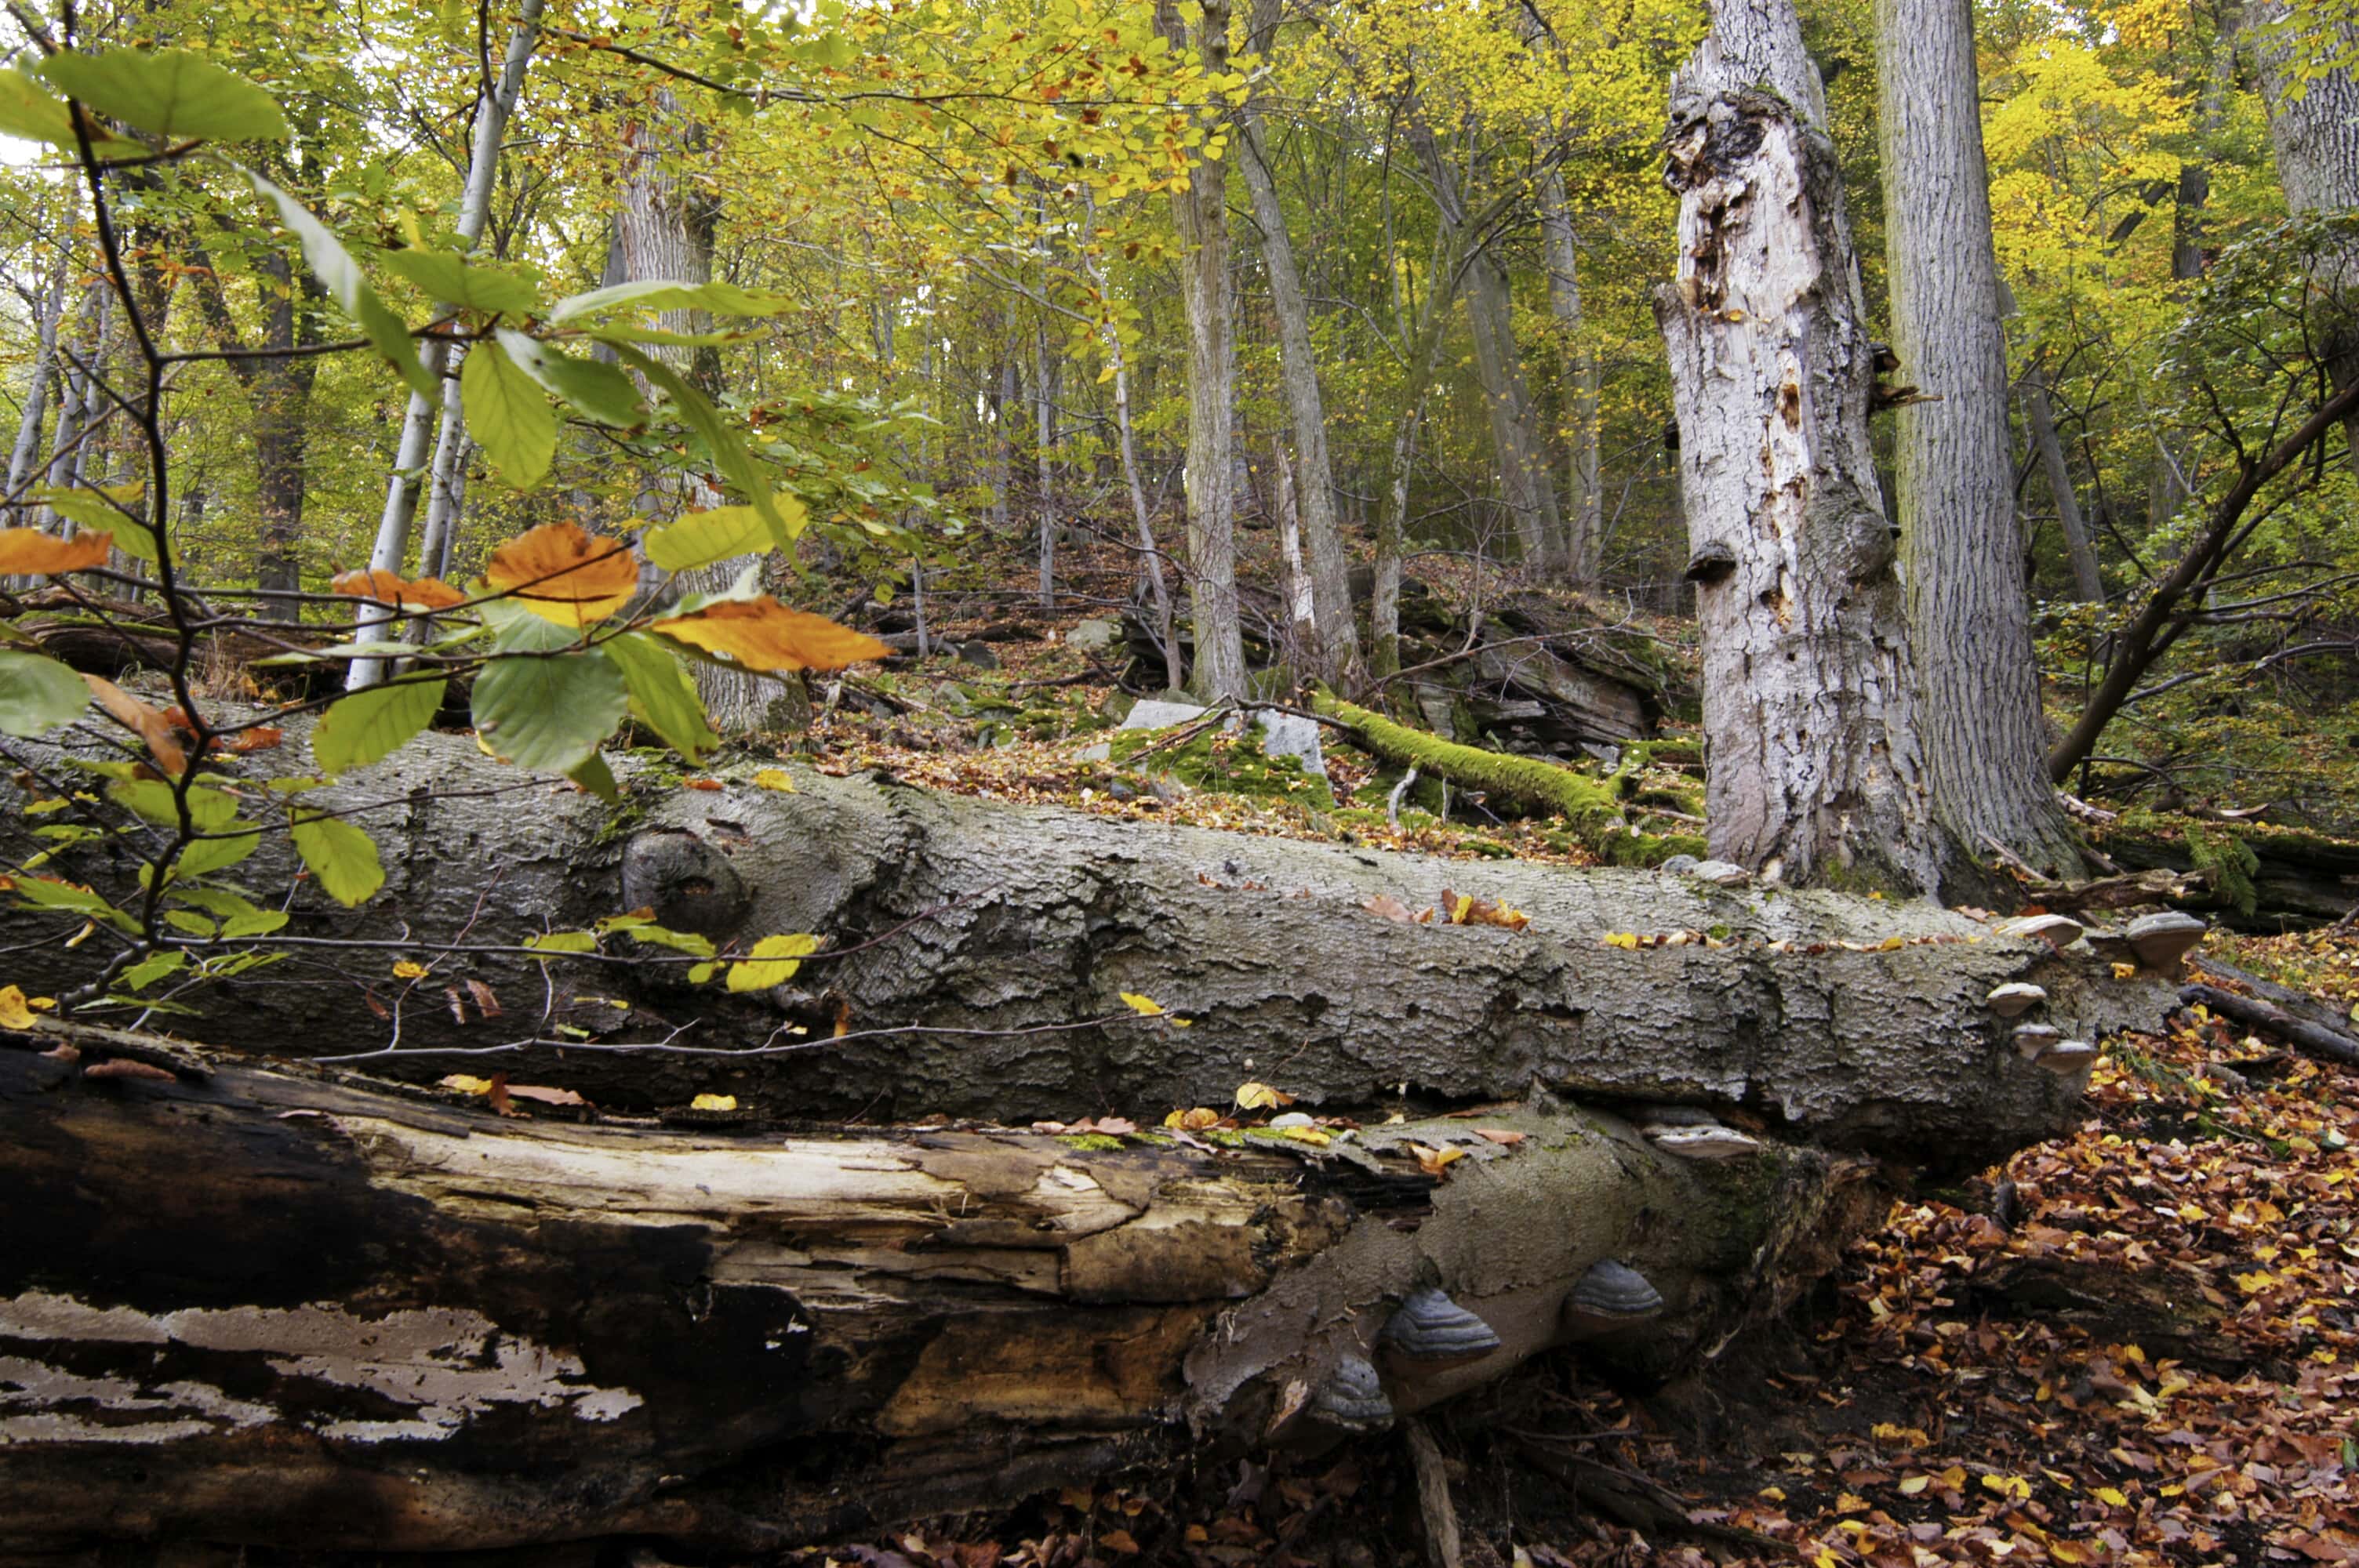 Lesní porosty s fungující přirozenou dynamikou rozpadu a obnovy zůstávají na většině území ponechány samovolnému vývoji. Foto Petr Lazárek